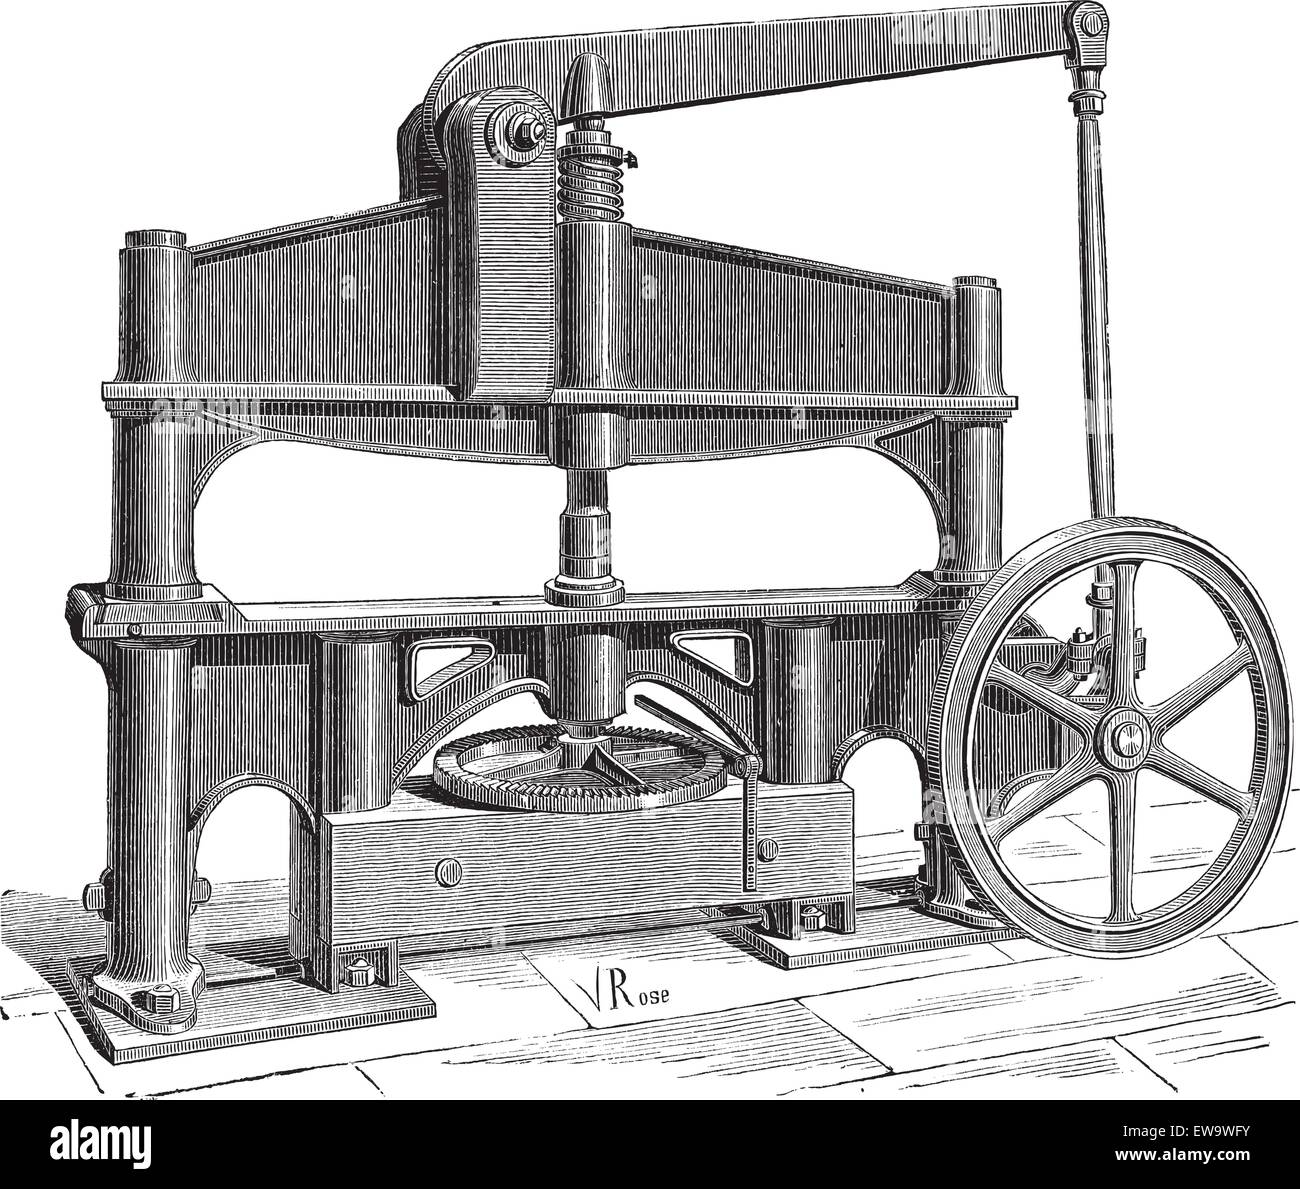 Vecchie illustrazioni incise della macchina utilizzata per elaborare il cuoio. Enciclopedia industriale E.-O. Lami - 1875. Illustrazione Vettoriale